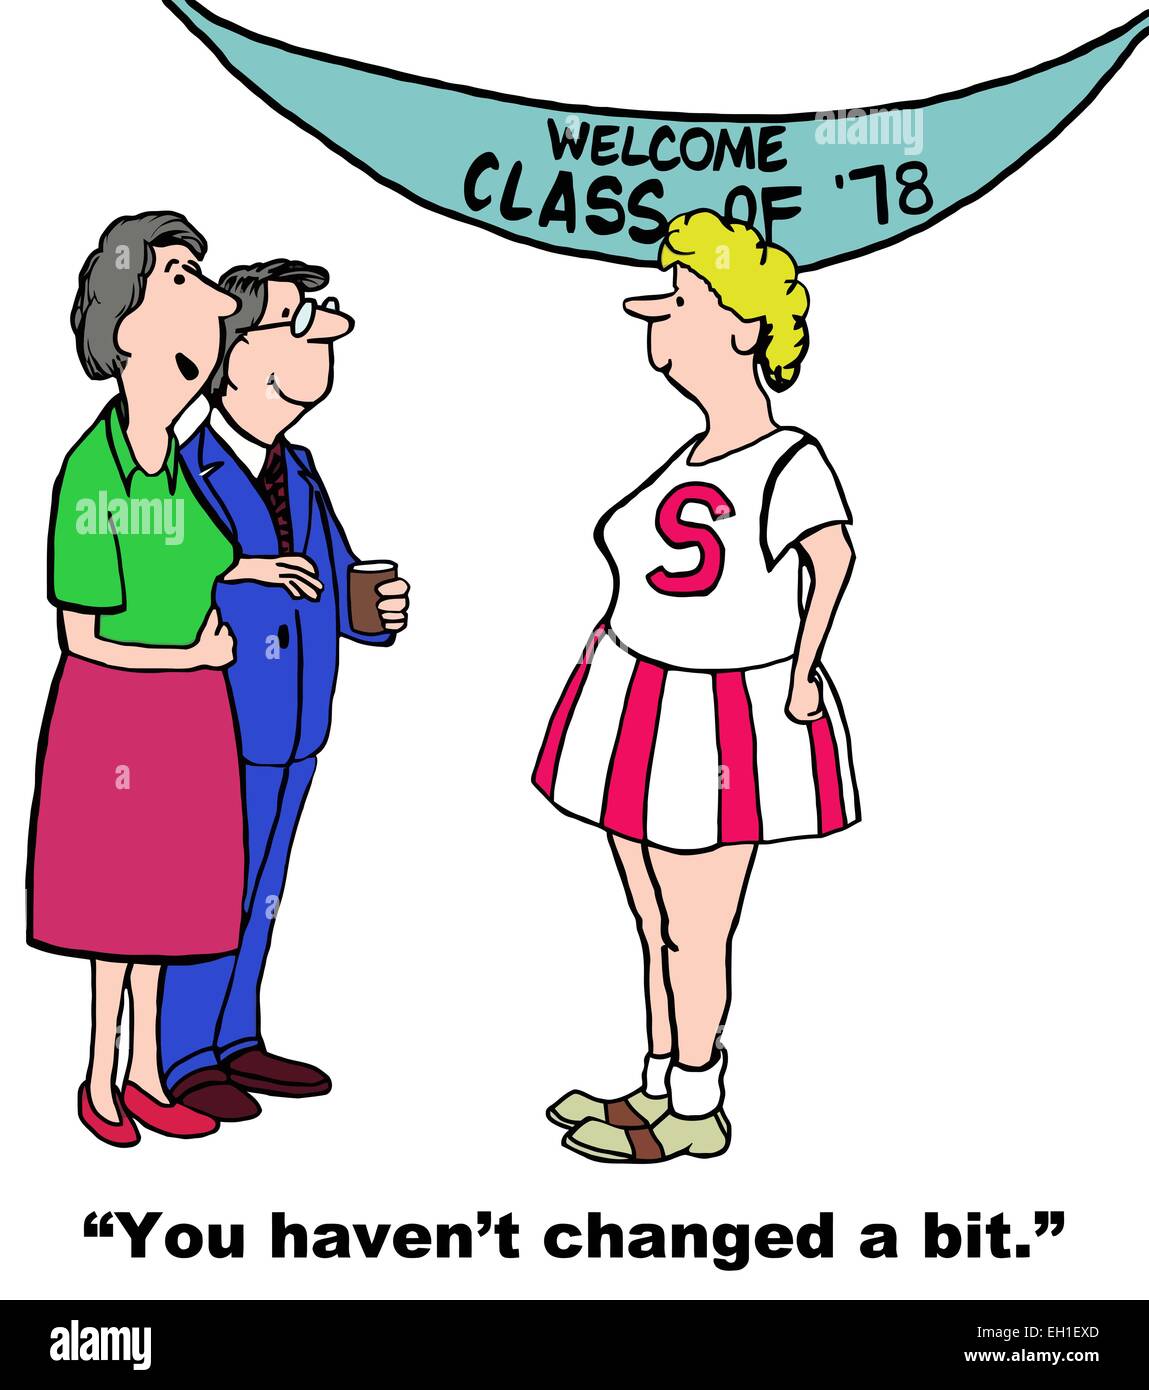 Cartoon di riunione di classe, due membri dire alla donna in cheerleader outfit, non hai cambiato un po'. Illustrazione Vettoriale